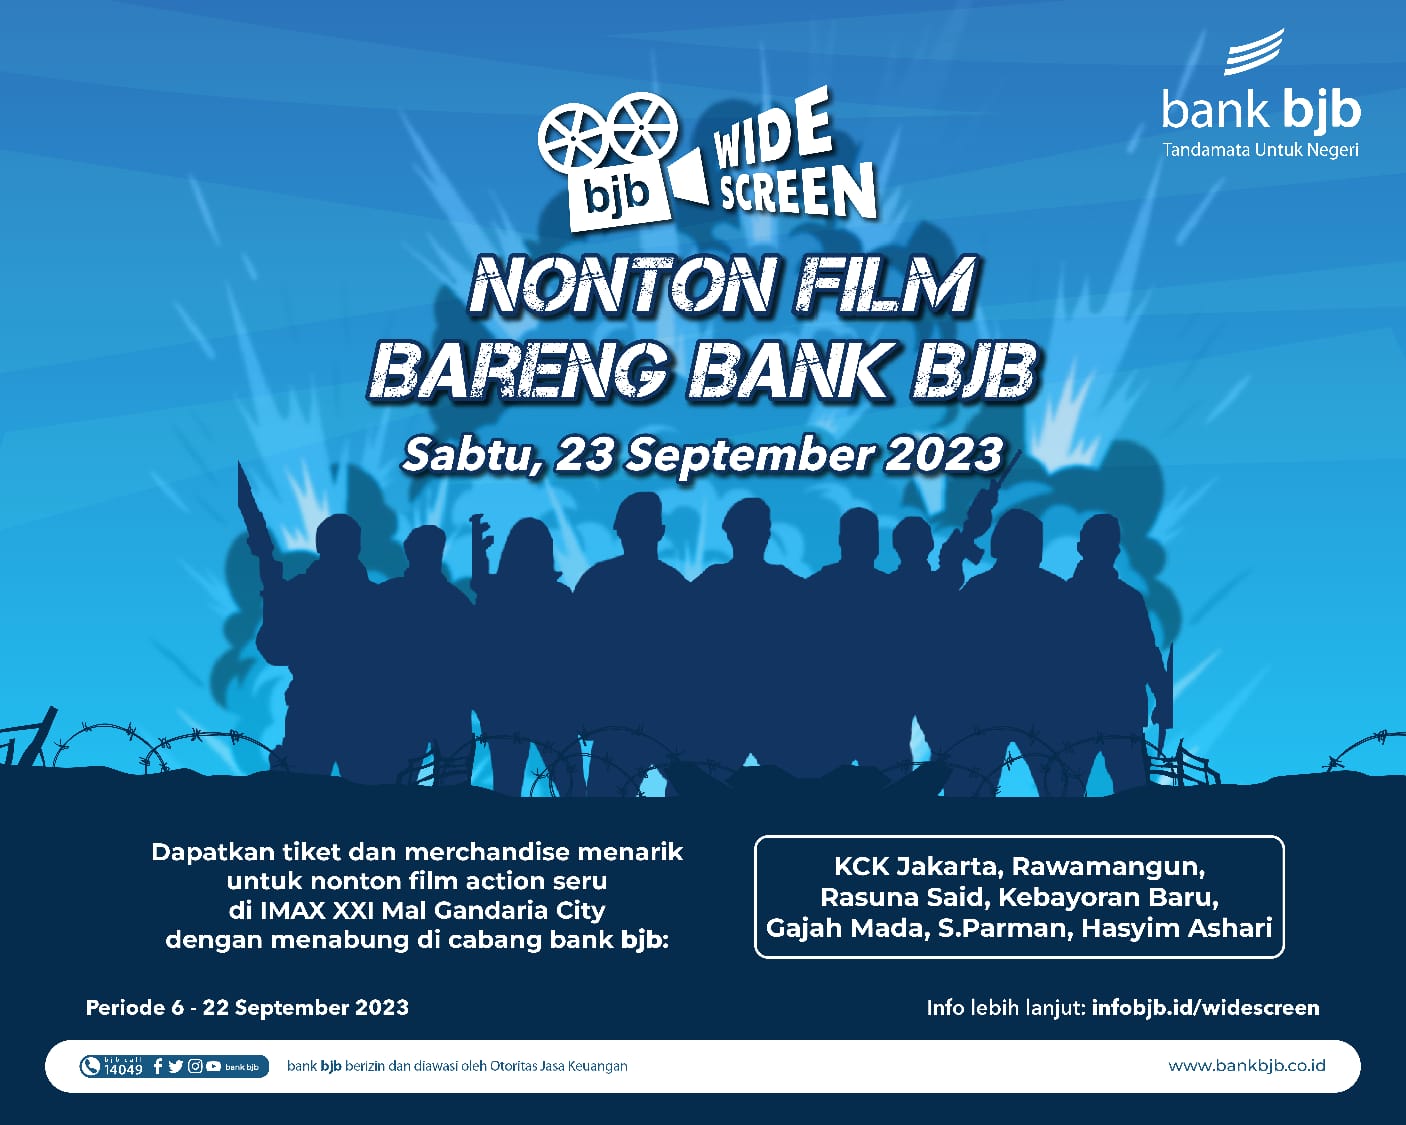 Nabung di bank bjb Bisa Nonton Bioskop Gratis, Simak Peluang Menonton Expendables 4 Bersama bank bjb 